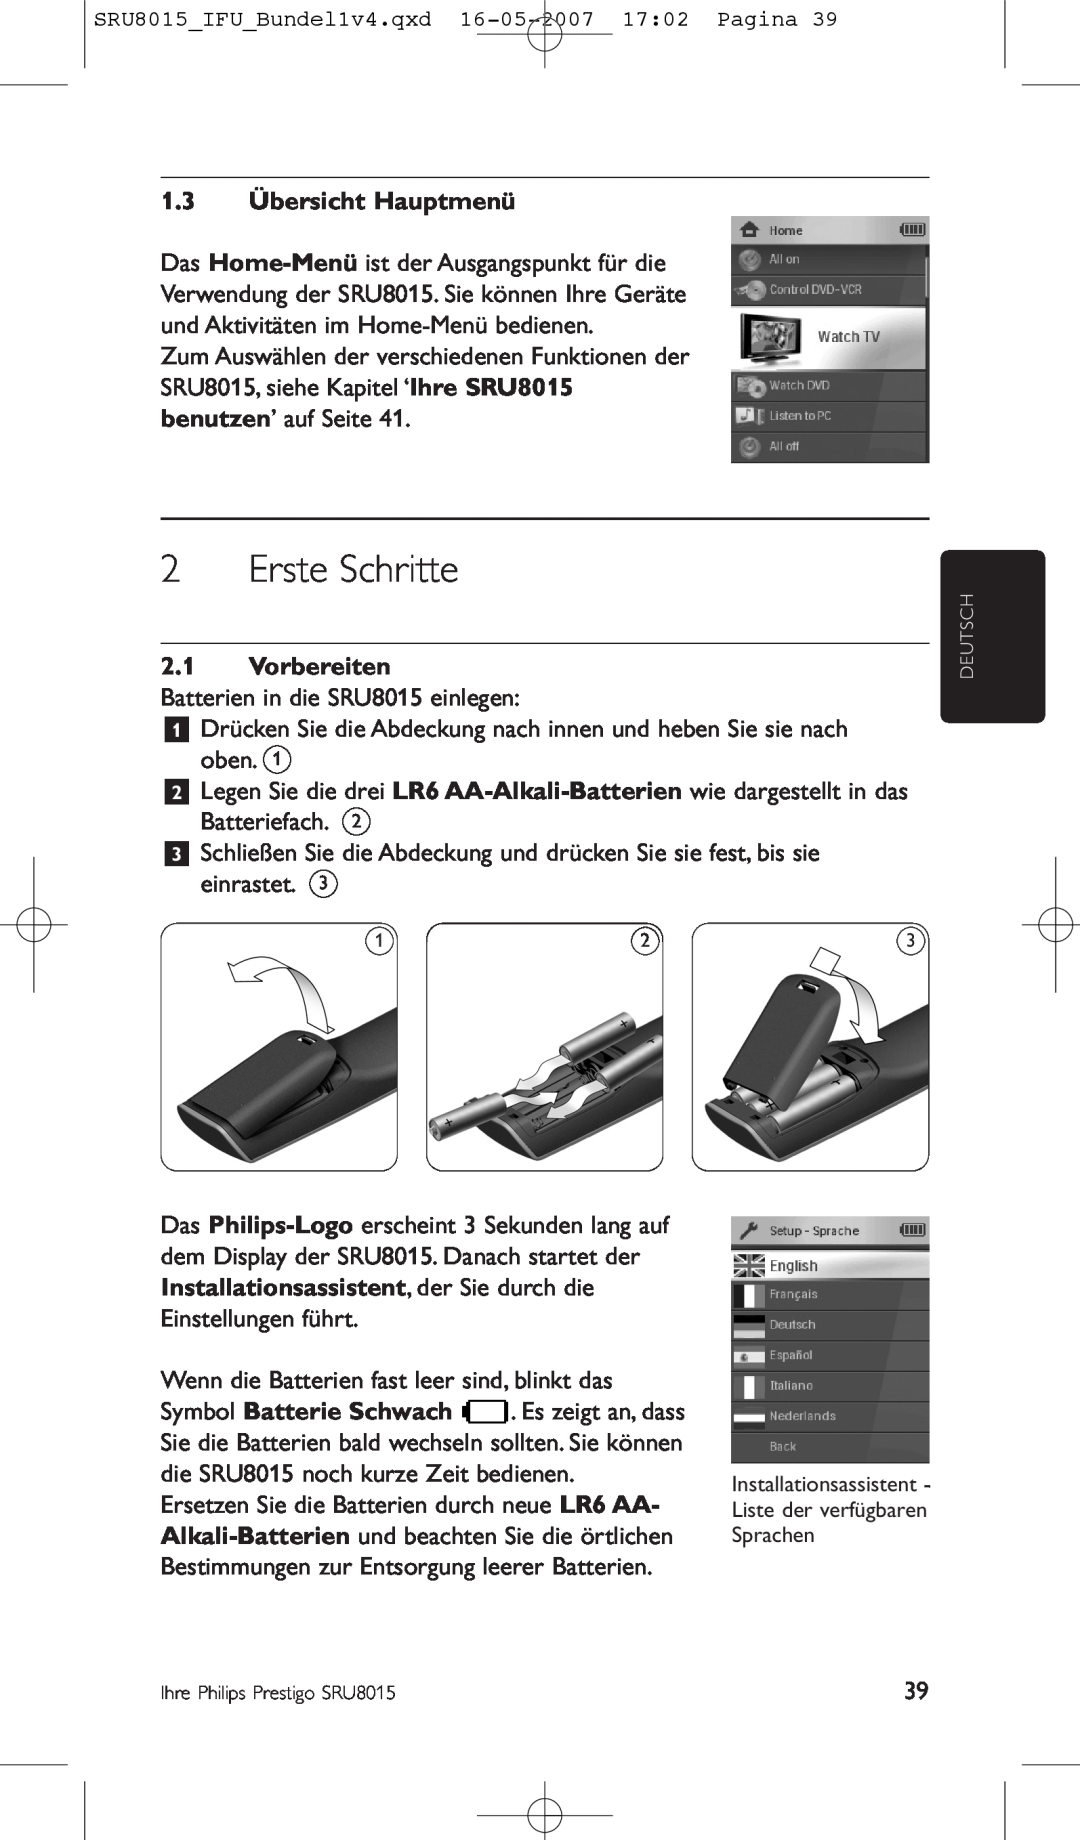 Philips SRU8015 manual Erste Schritte, 1.3 Übersicht Hauptmenü, Vorbereiten 